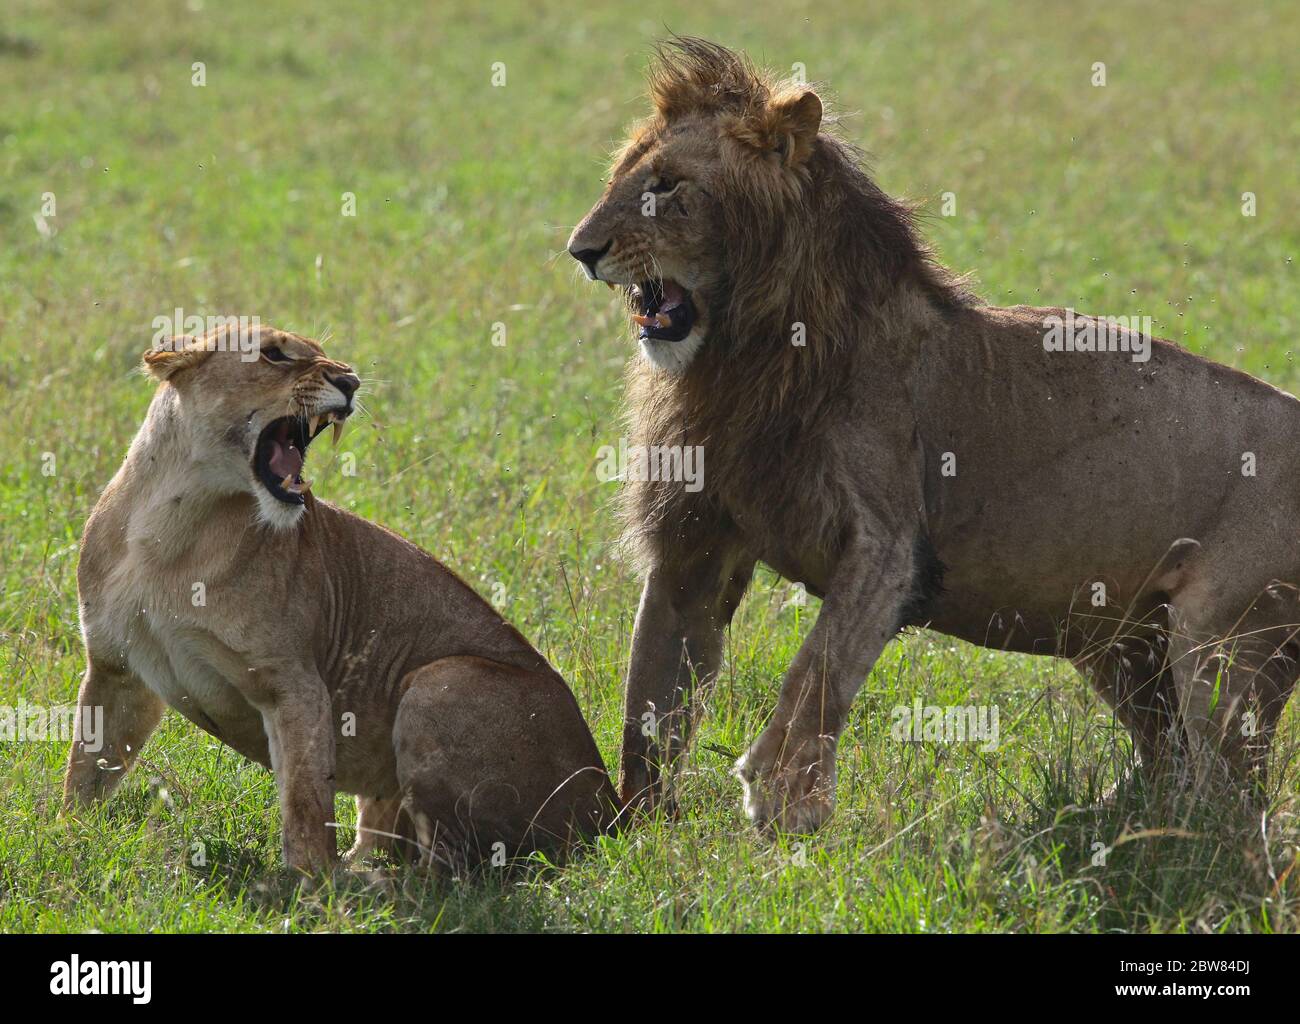 une lionne prête à s'accoupler se fend d'un lion mâle, tous deux ont une large bouche ouverte en défense Banque D'Images